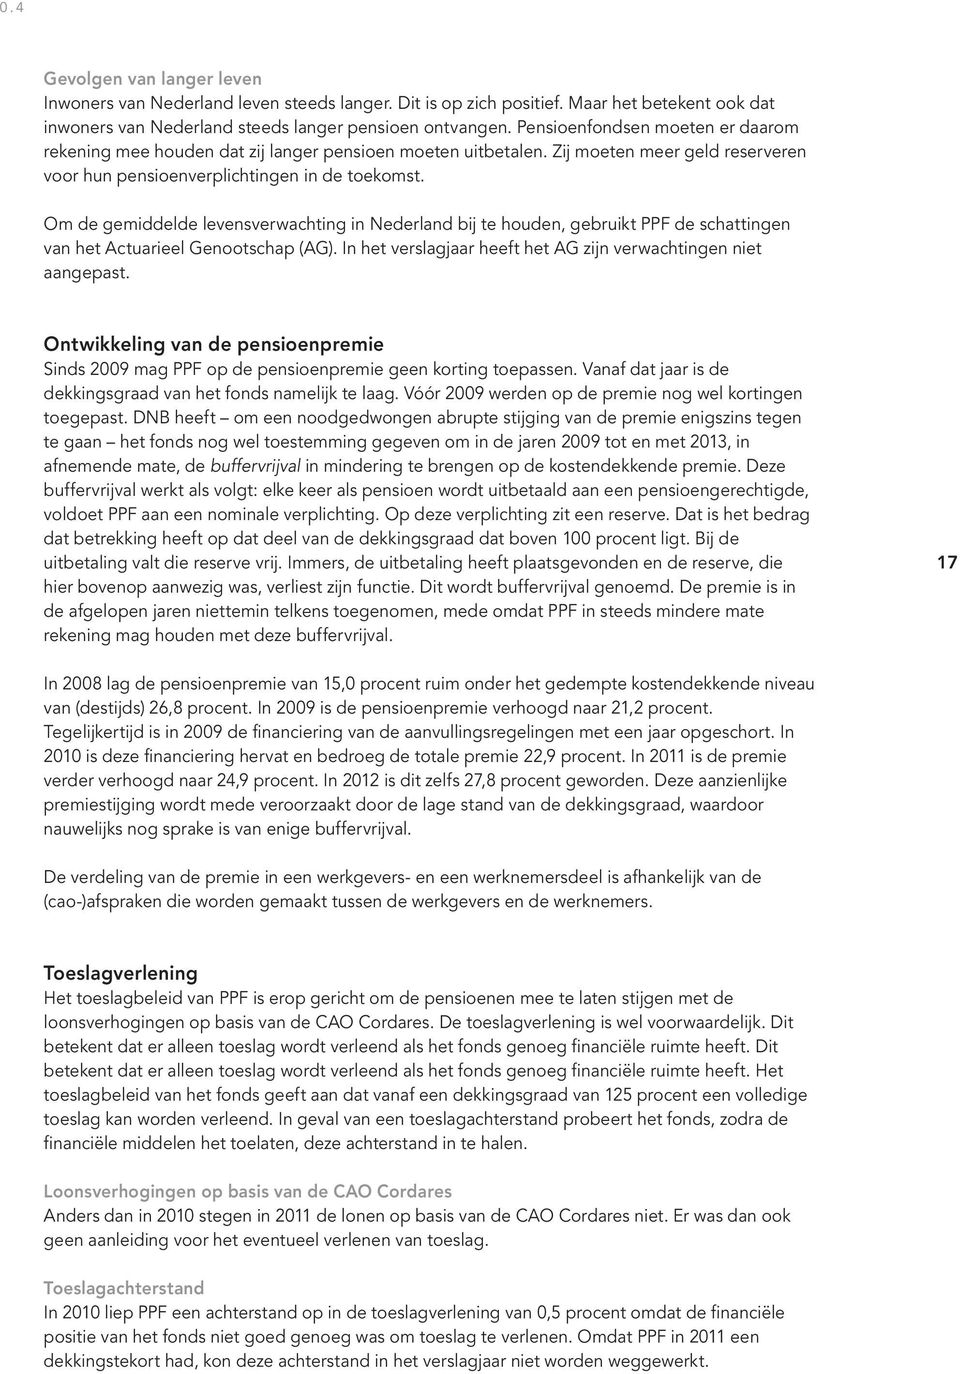 Om de gemiddelde levensverwachting in Nederland bij te houden, gebruikt PPF de schattingen van het Actuarieel Genootschap (AG). In het verslagjaar heeft het AG zijn verwachtingen niet aangepast.